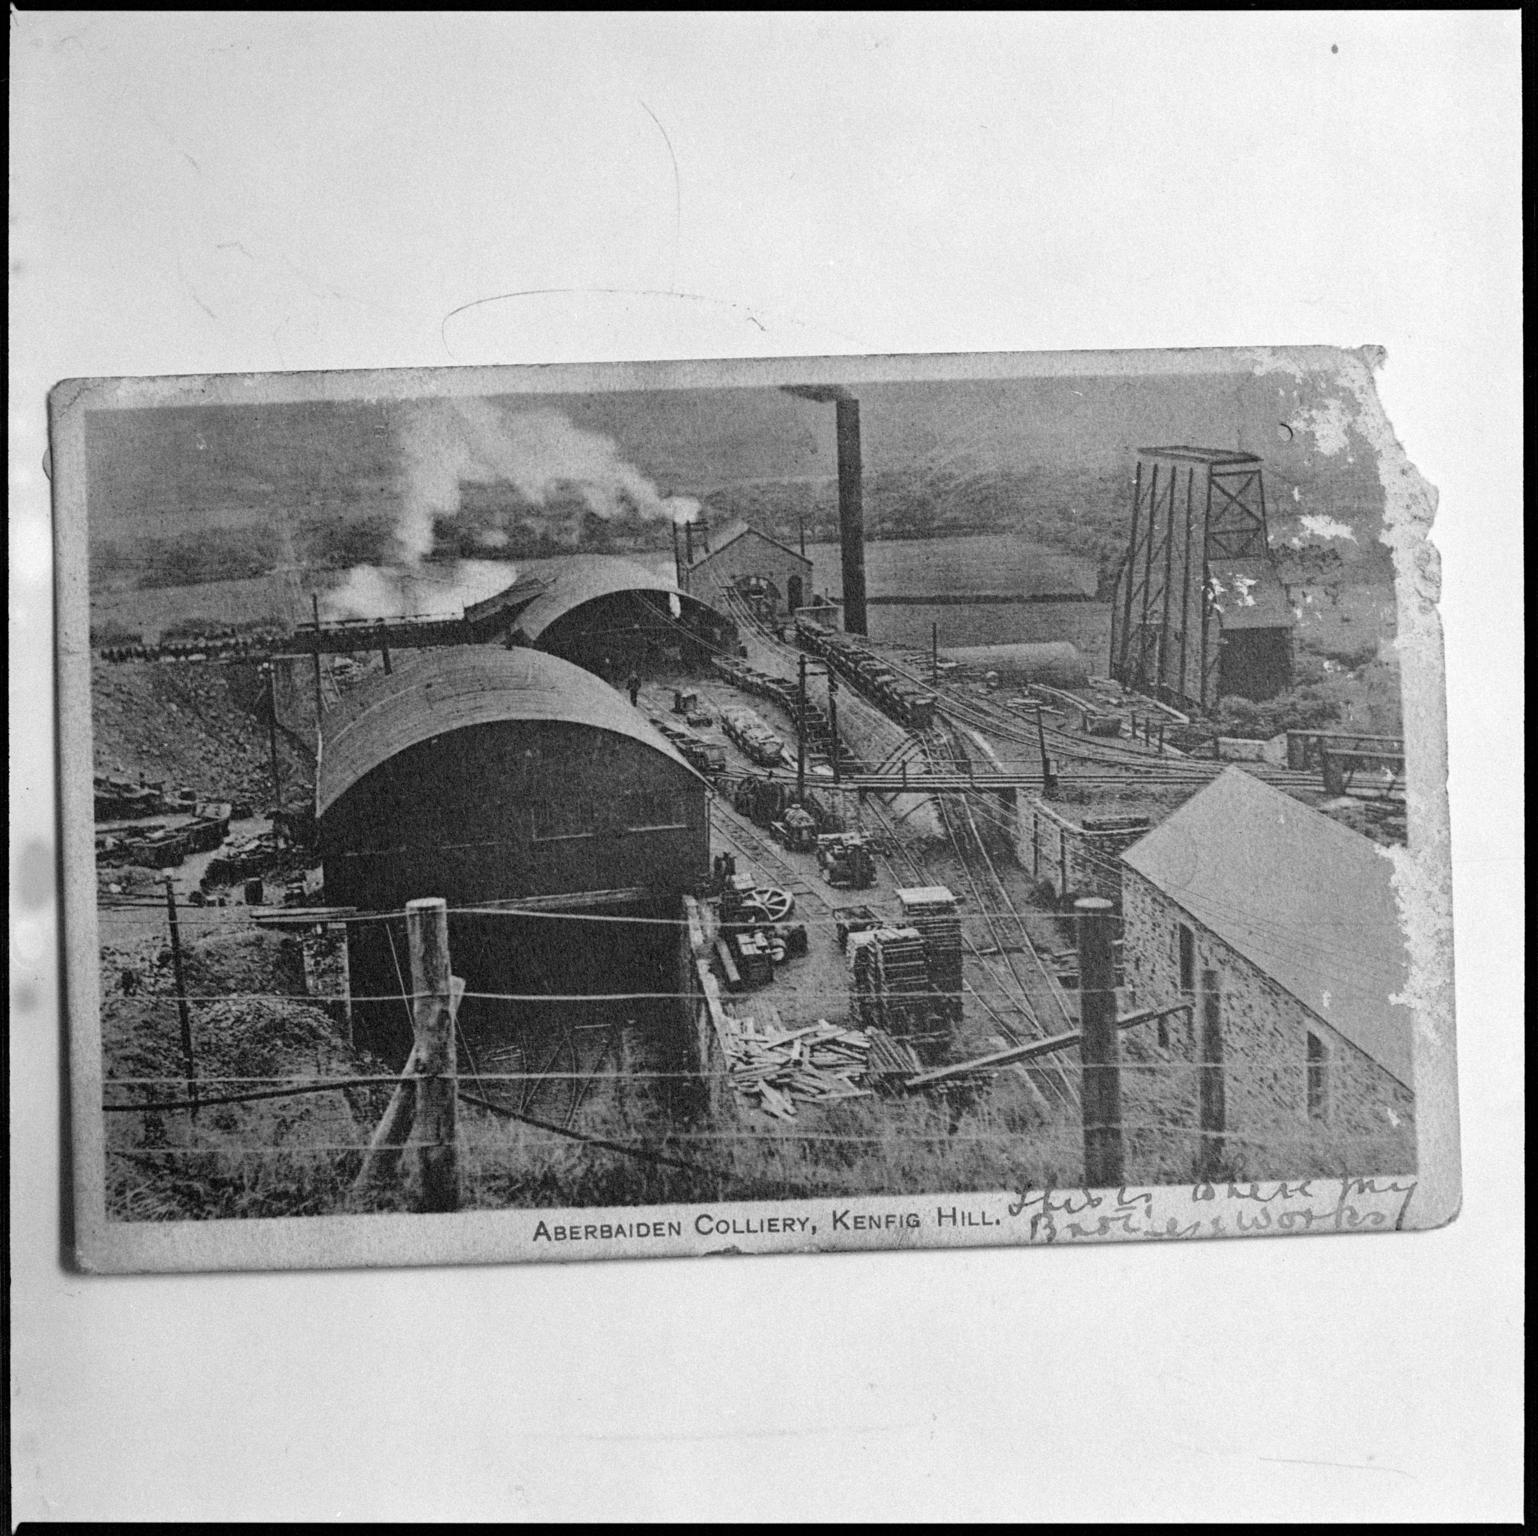 Aberbaiden Colliery, film negative